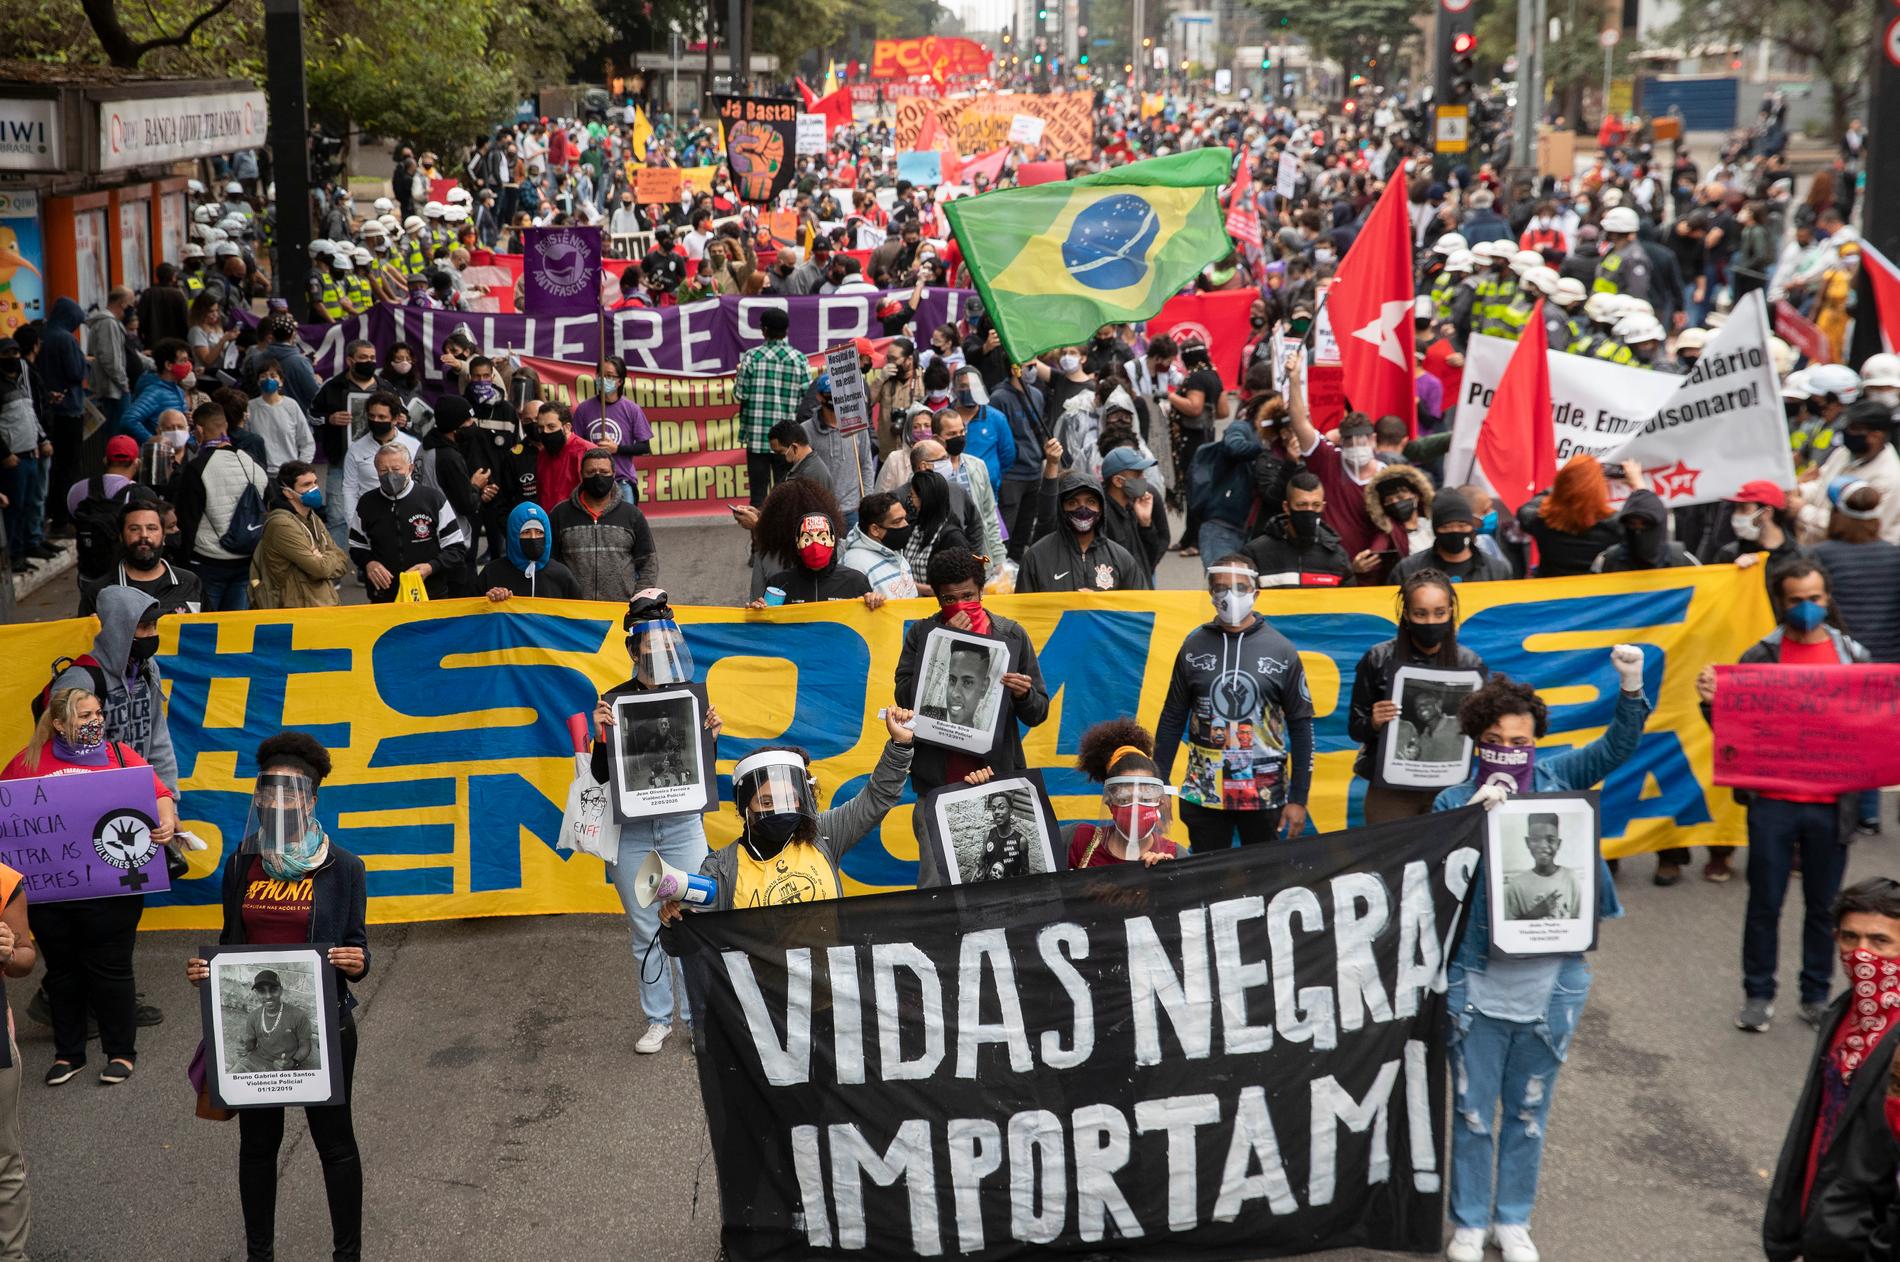 "Vidas negras importam" – portugisiska för "Black lives matter" – står det på plakaten under en av demonstrationerna i São Paolo tidigare i somras.